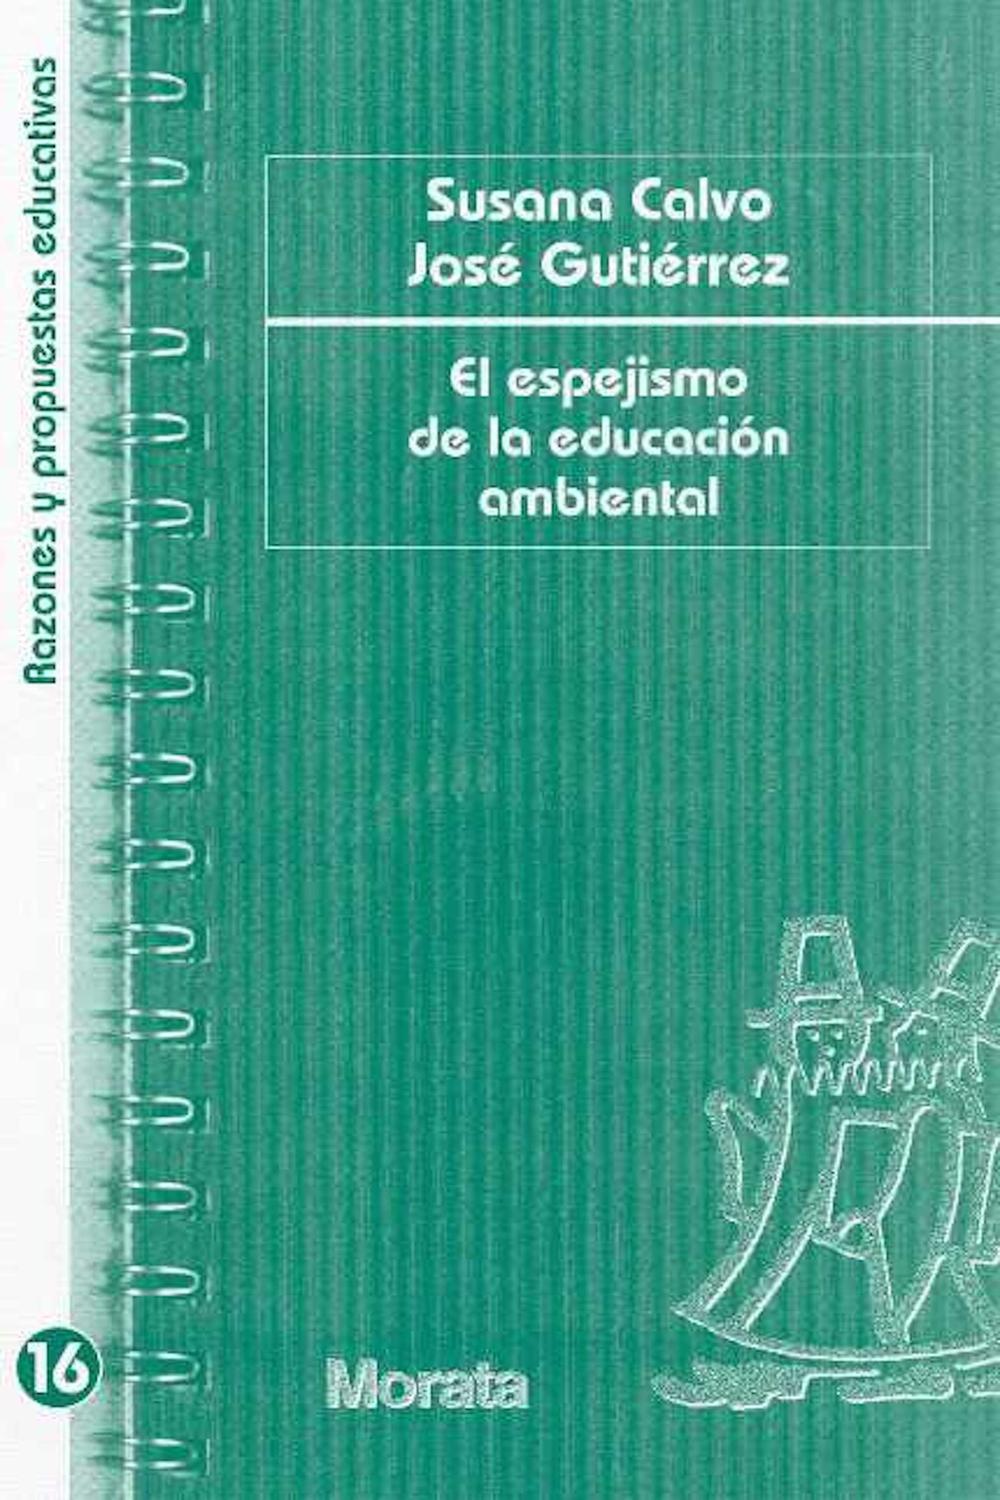 El espejismo de la educación ambiental - Susana Calvo, José Gutiérrez